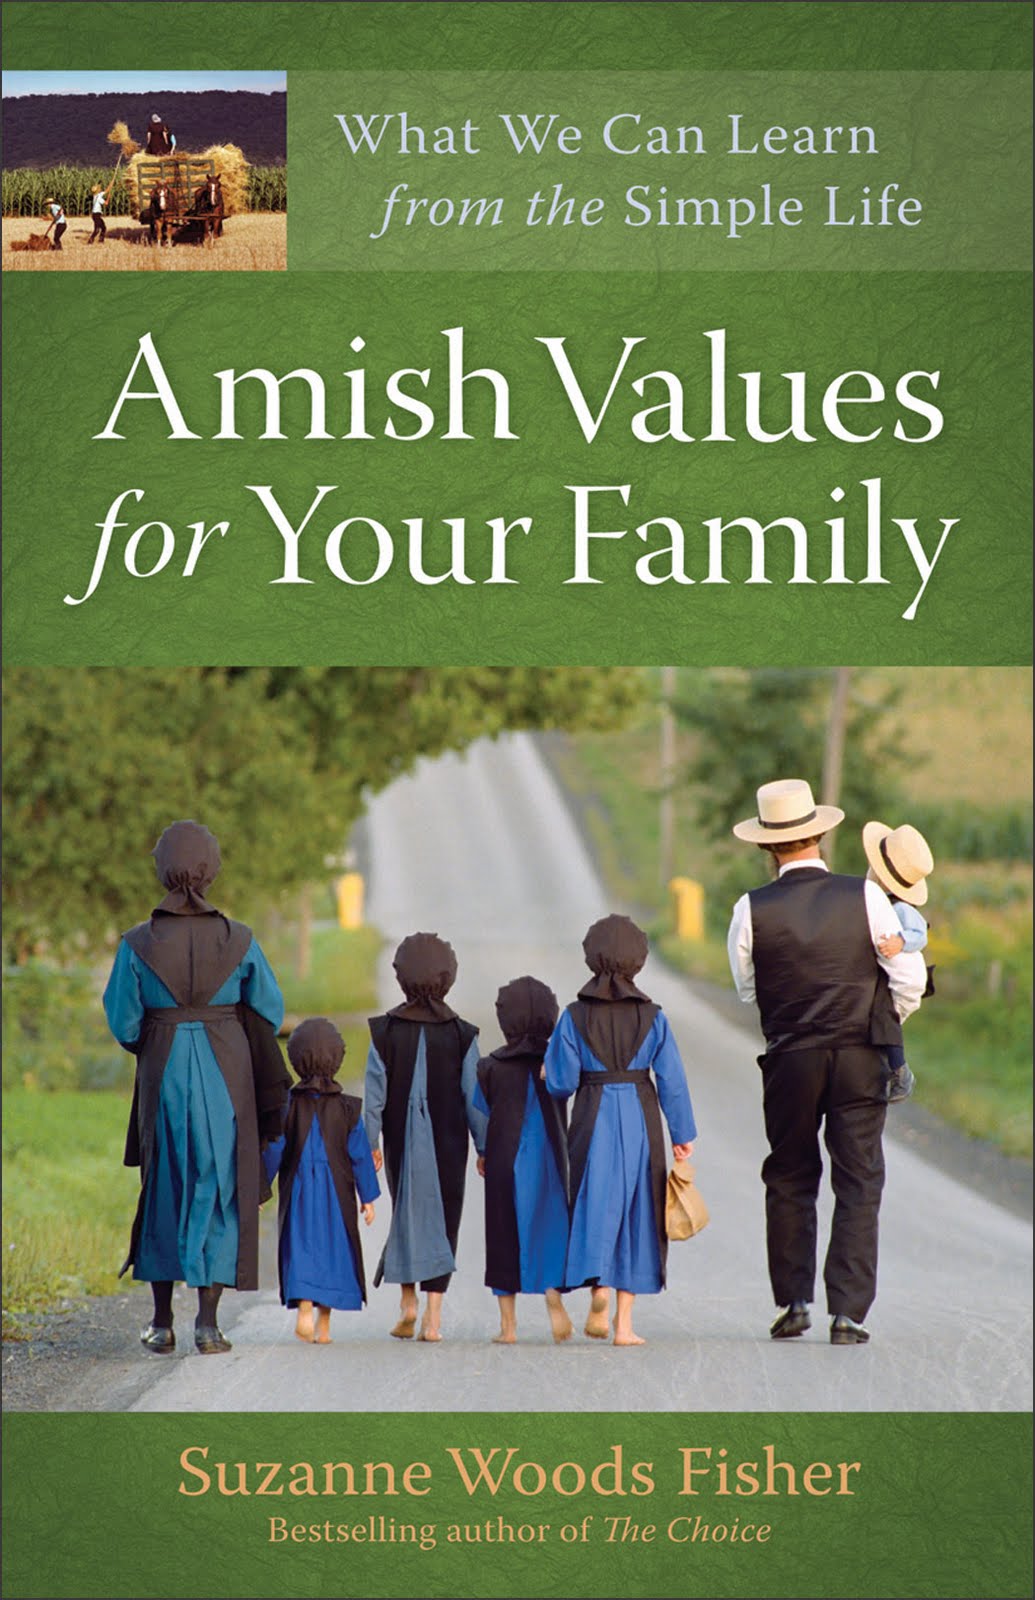 http://2.bp.blogspot.com/-IirO2wOE2Q4/TlaBmdUF21I/AAAAAAAAA2o/jDOKTjn-osQ/s1600/Amish+Values.jpg#Amish%201035x1600